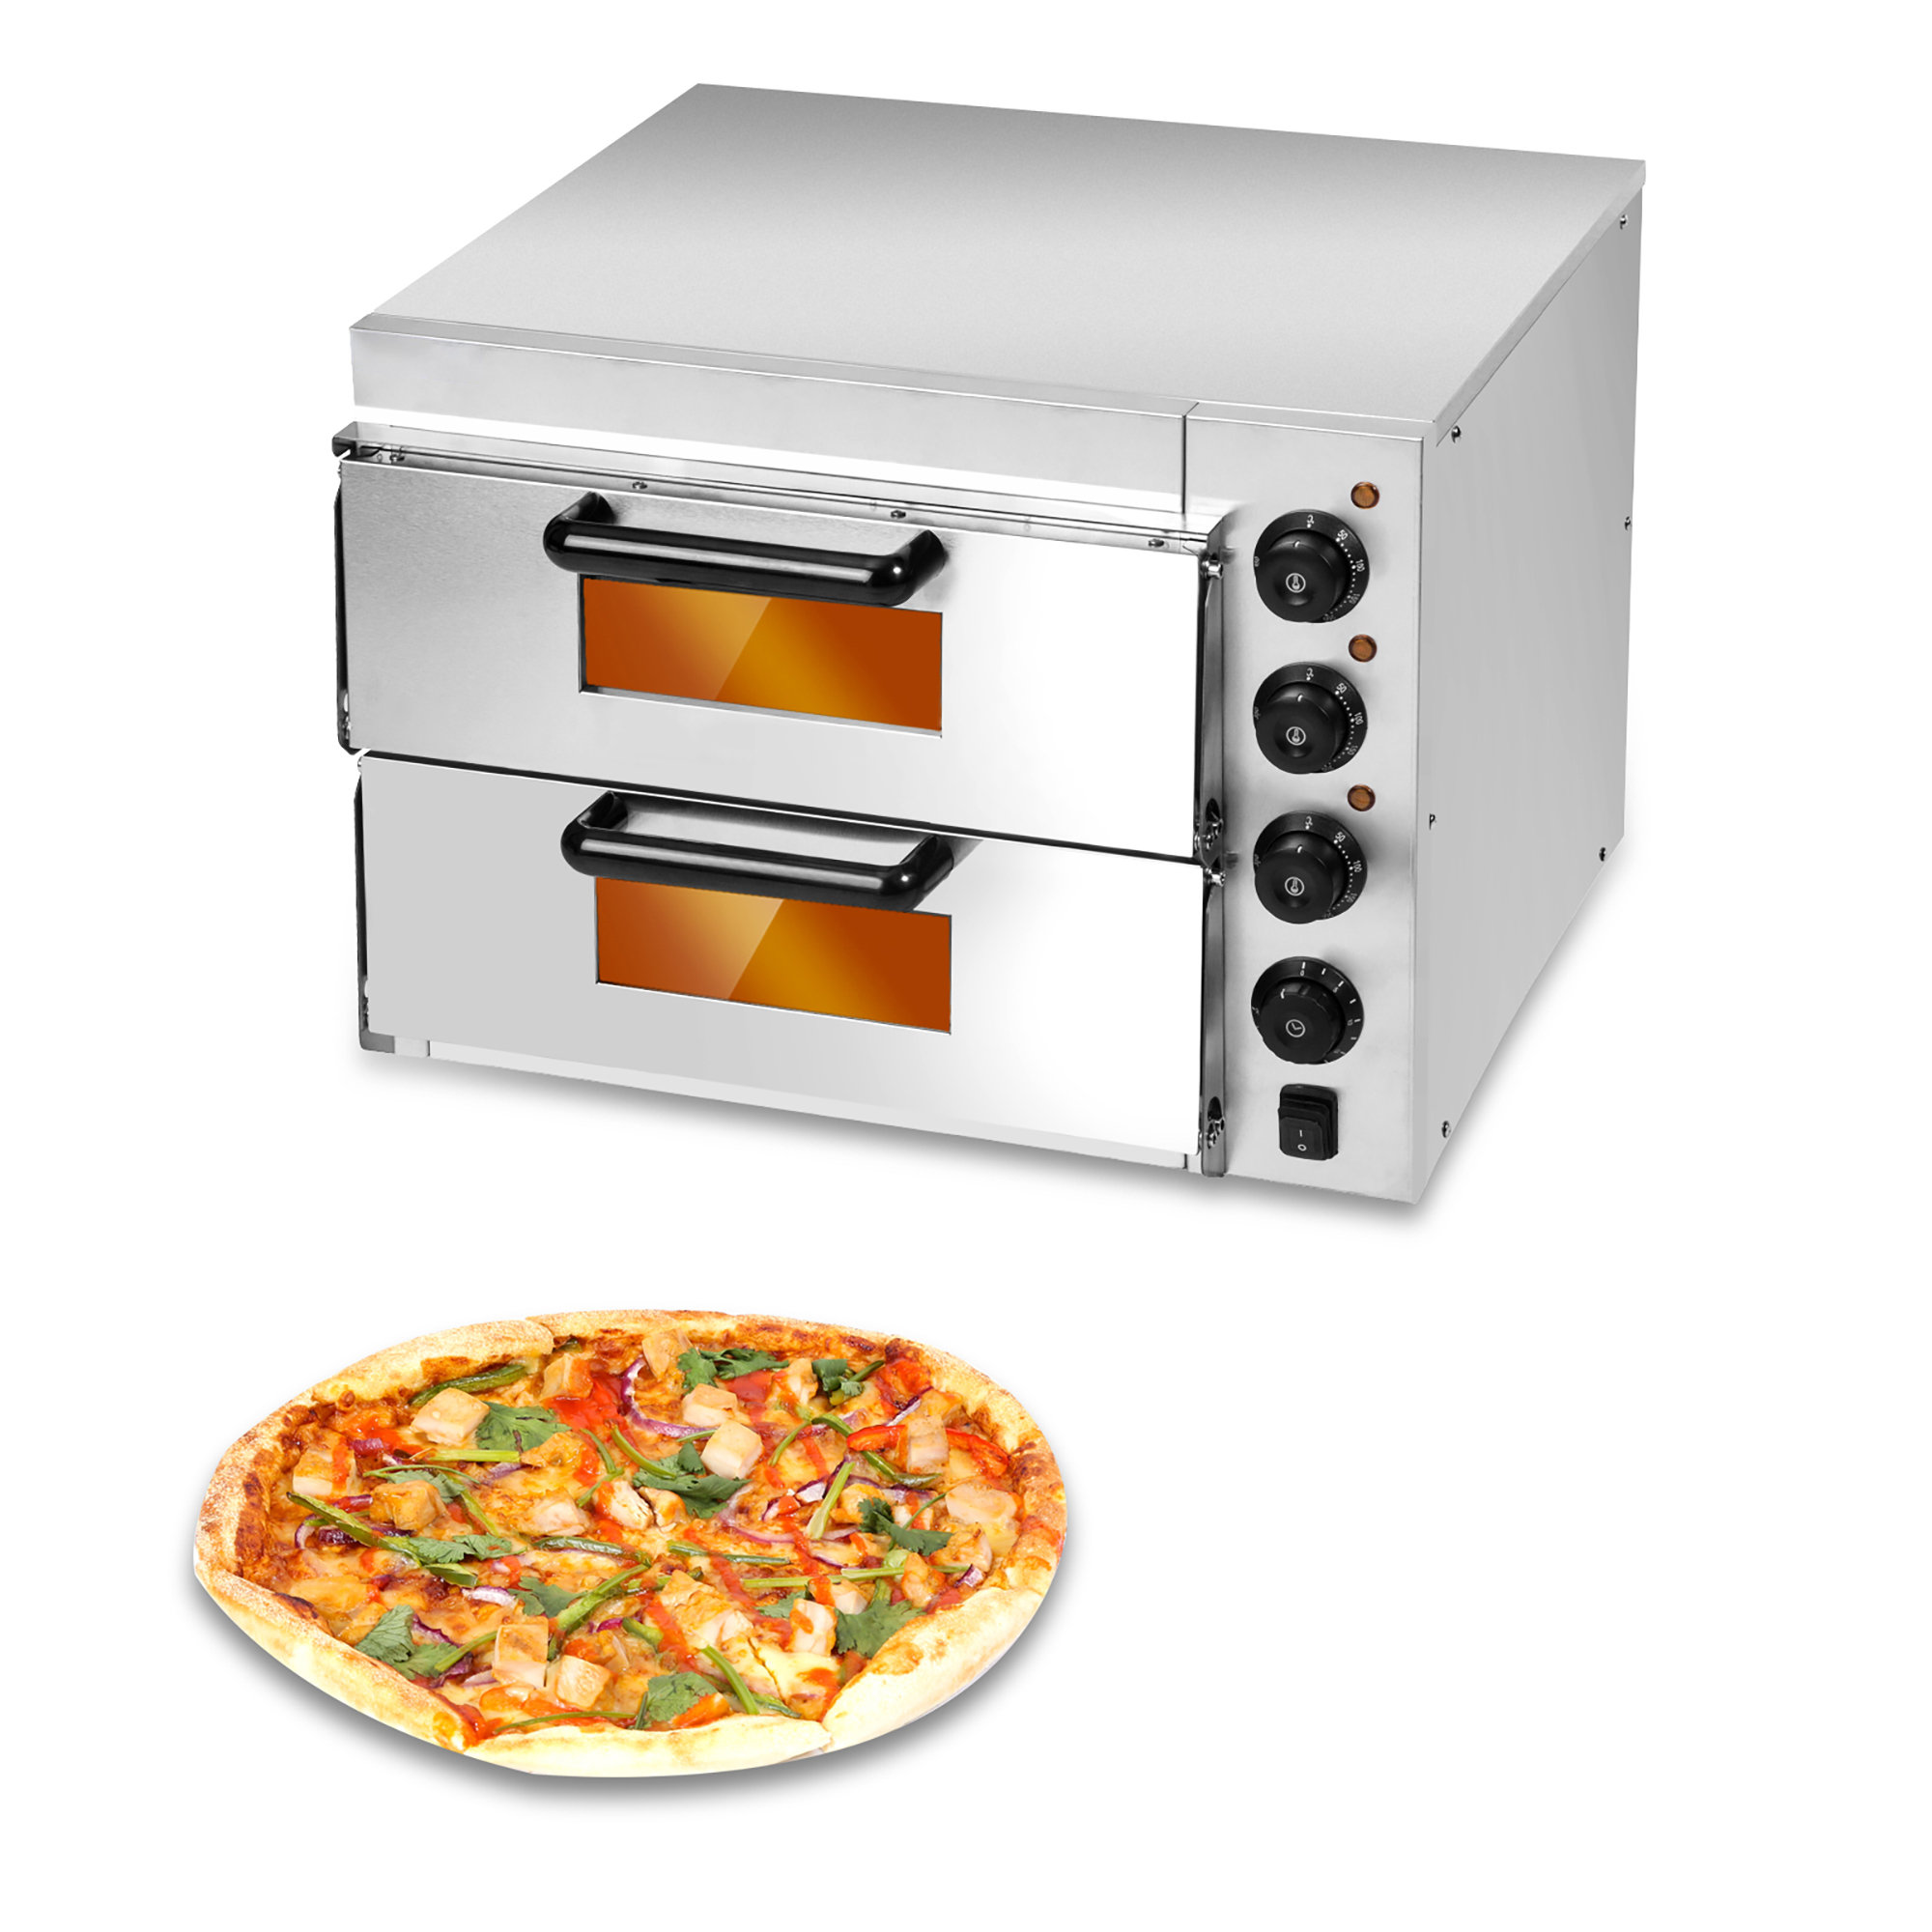 https://assets.wfcdn.com/im/23191574/compr-r85/2051/205114311/aiychen-countertop-pizza-oven.jpg